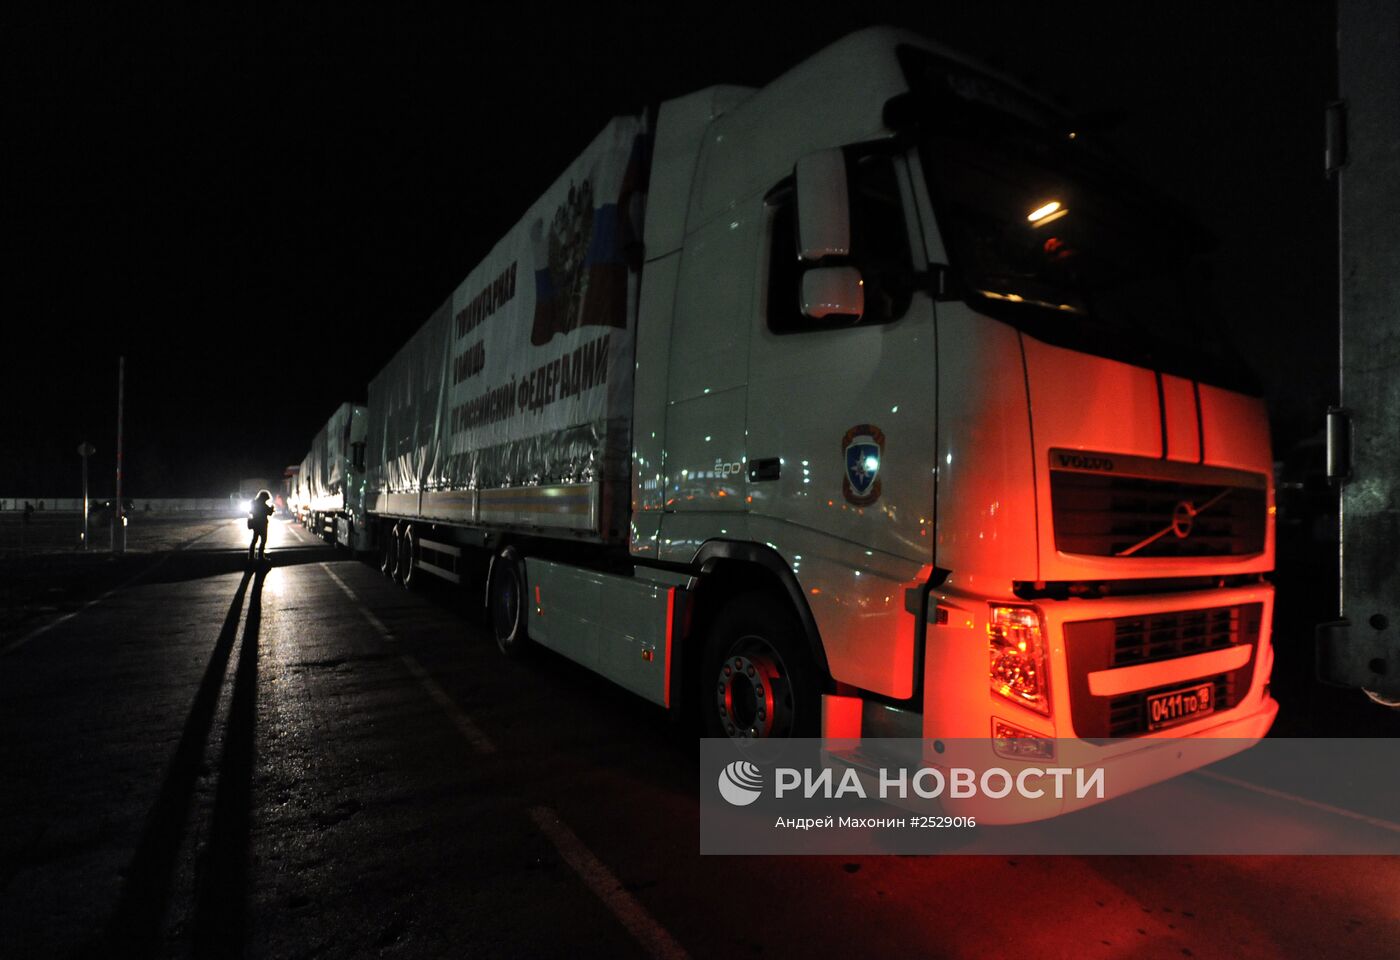 Седьмой российский гуманитарный конвой прибыл в Донбасс